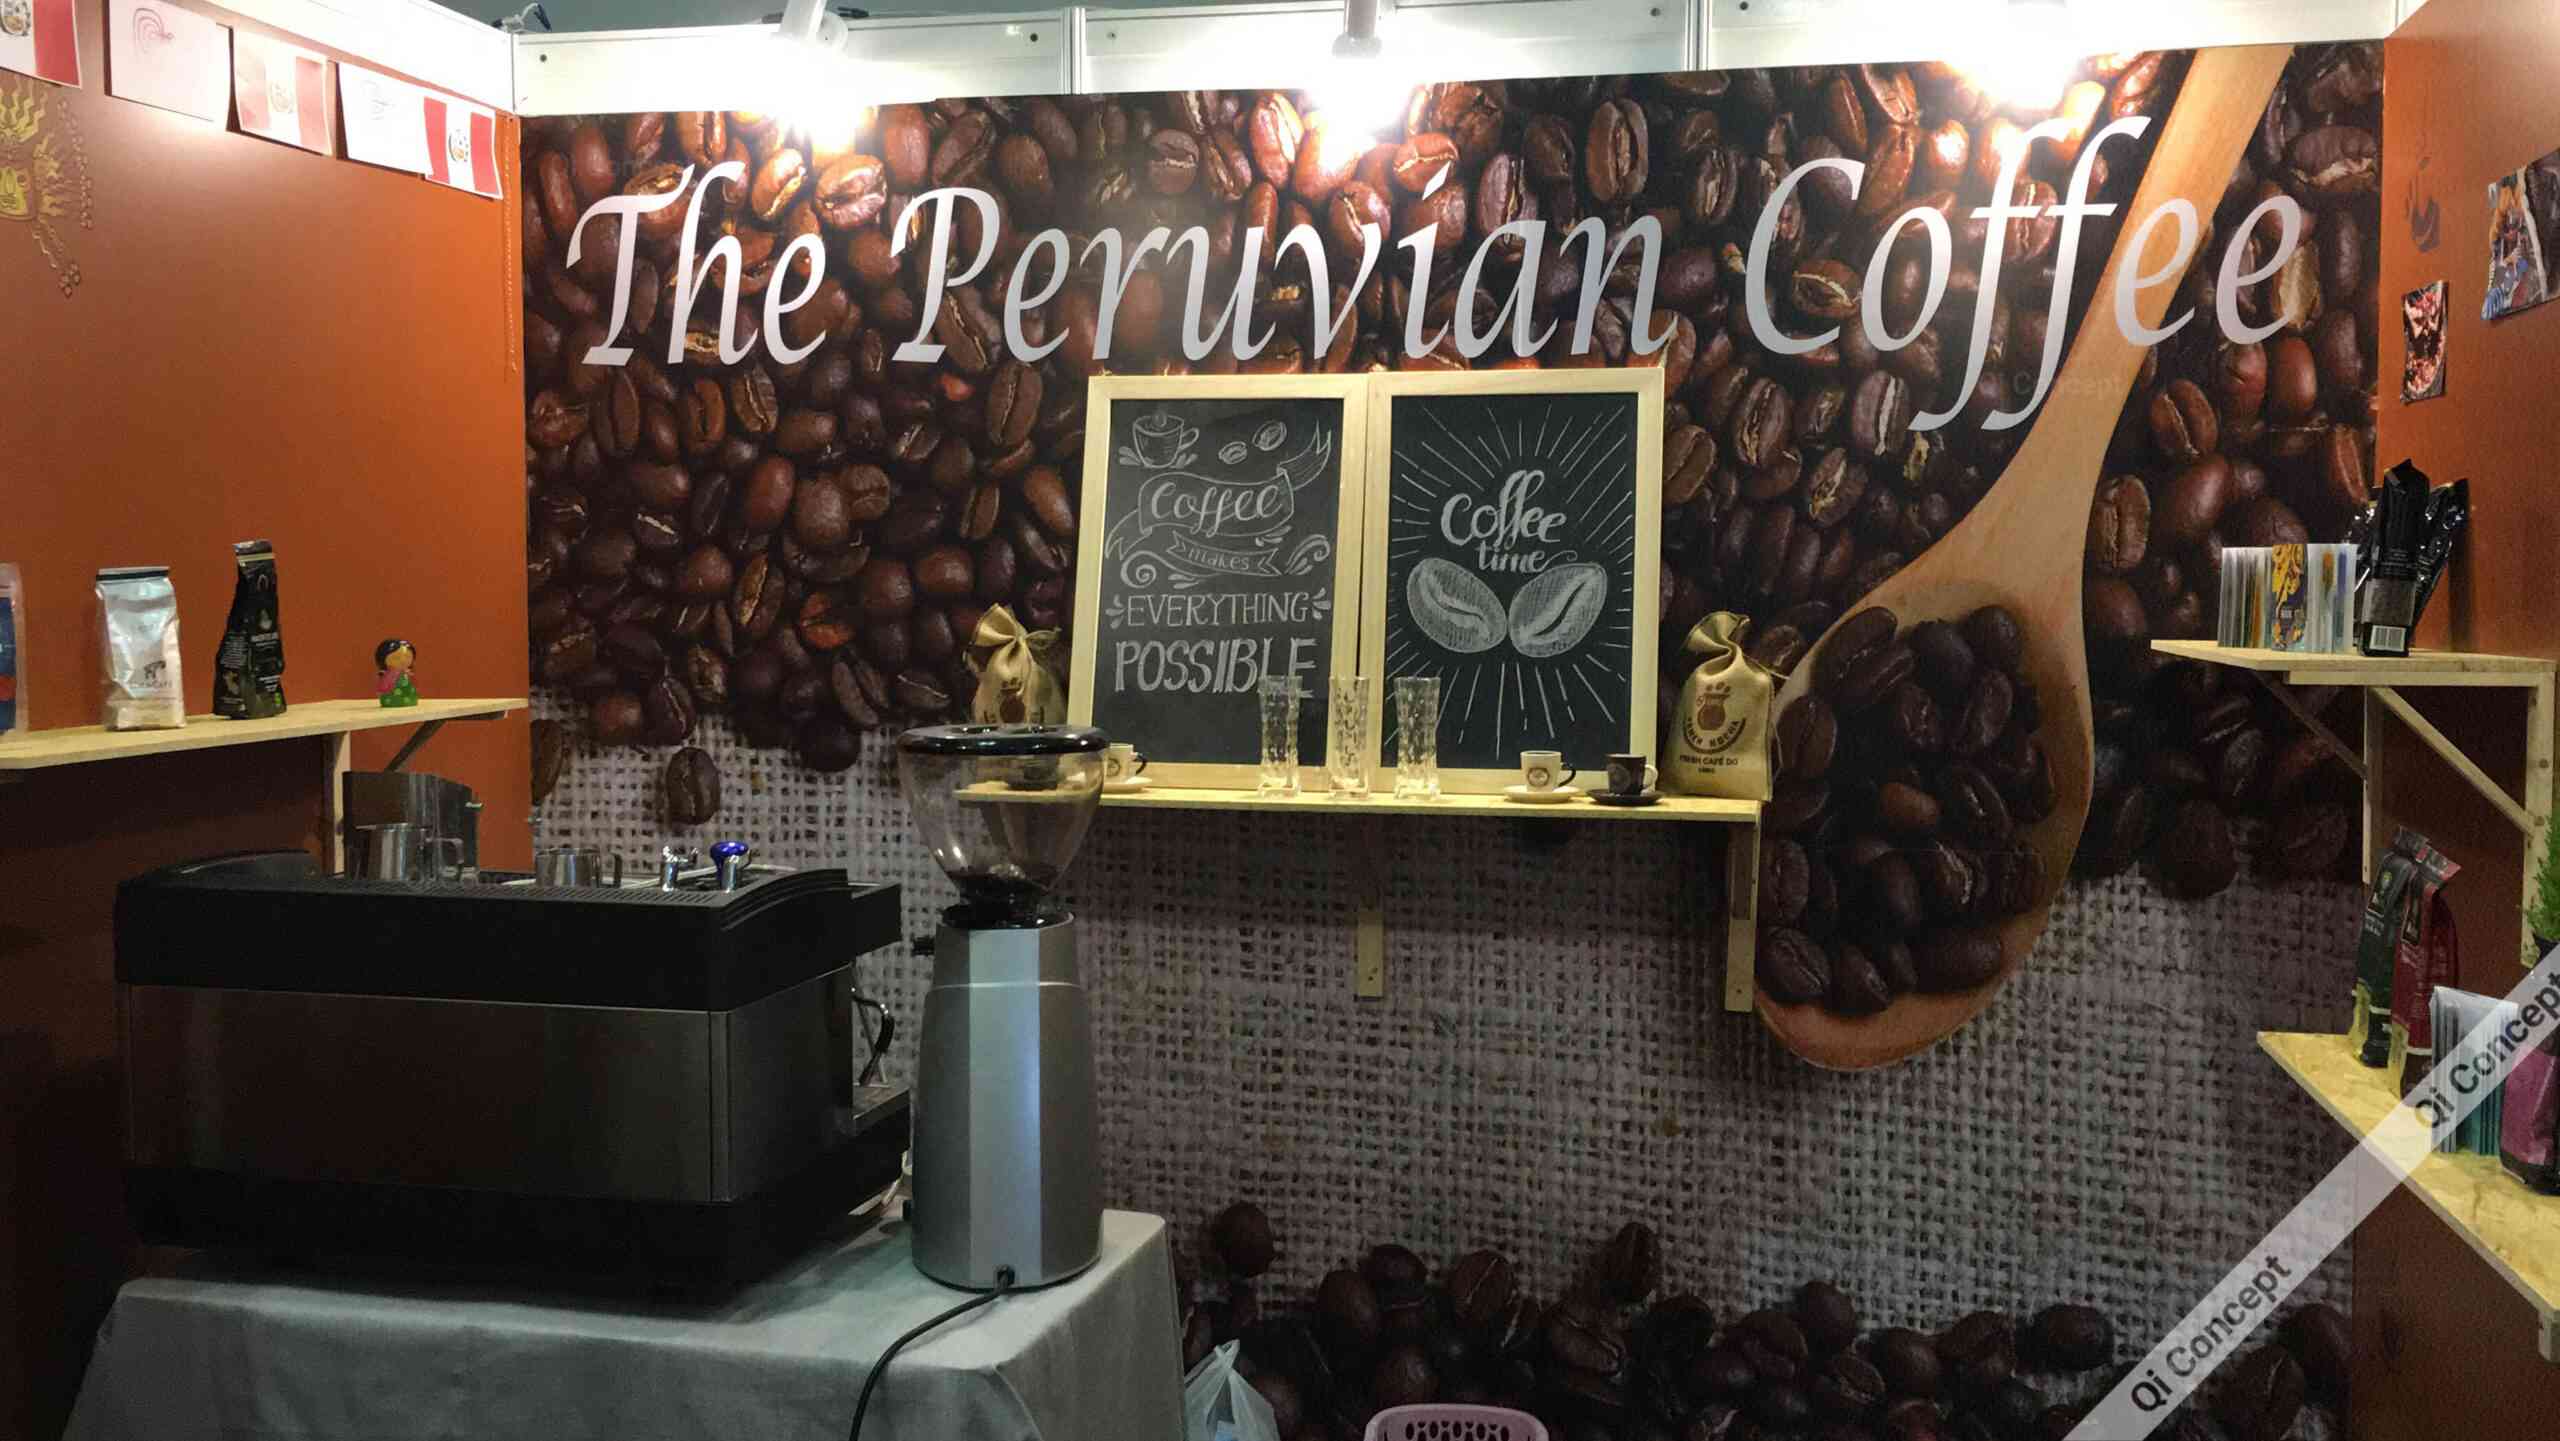 Báo Giá Thiết Kế Nội Thất Quán Cafe Show Đại Sứ Quán Peru